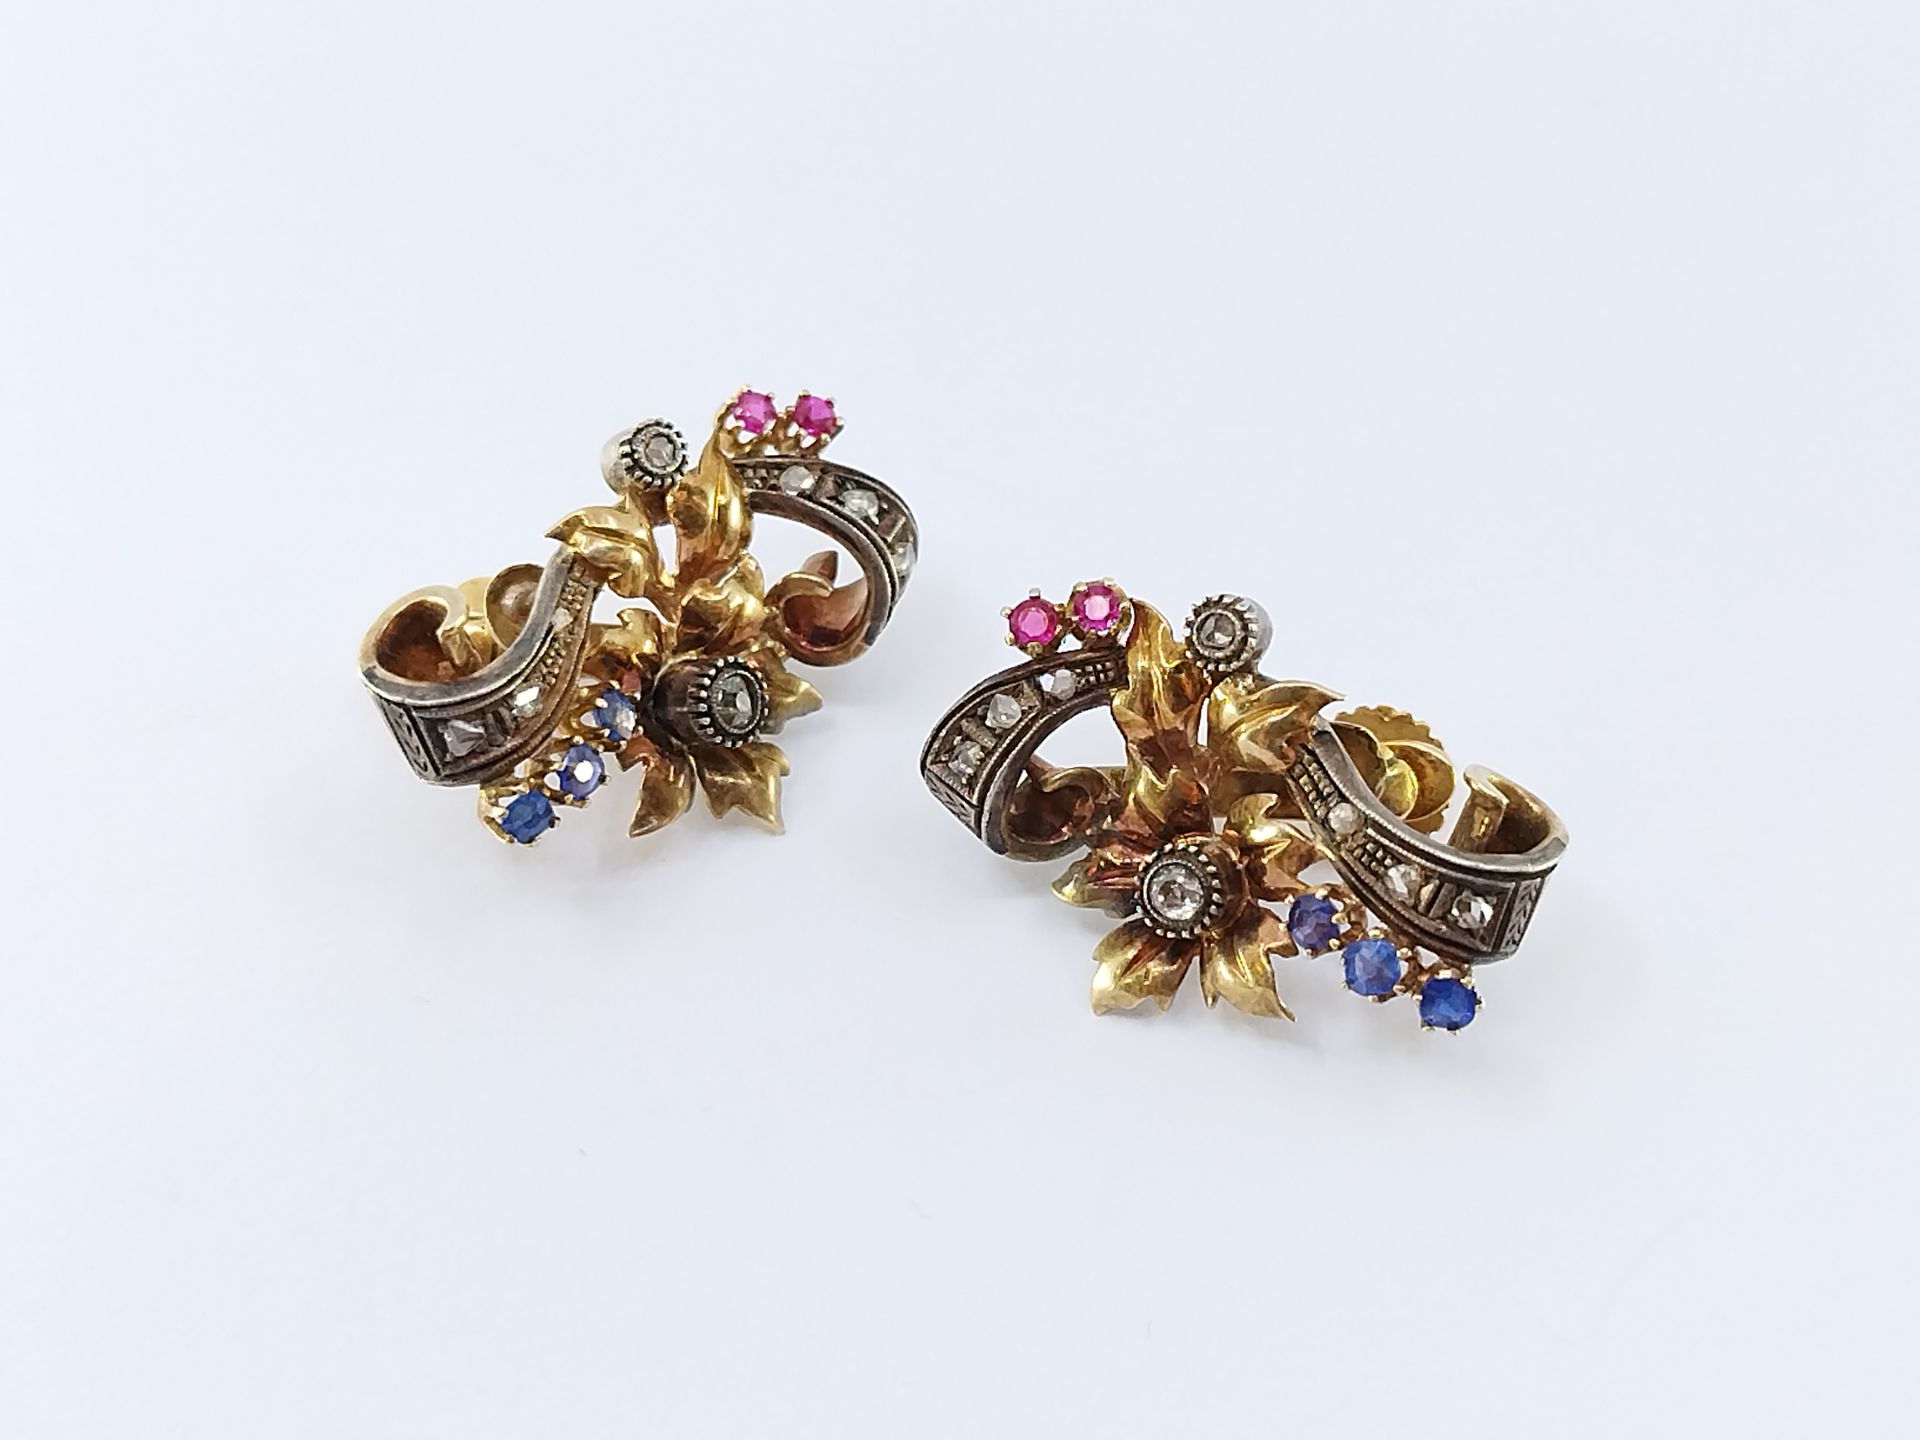 Null 一对金银色的卷轴形式的耳环，镶嵌着玫瑰和老式切割钻石，采用封闭式镶嵌。 

毛重 : 9,08 g 

约1880年

焊接的痕迹